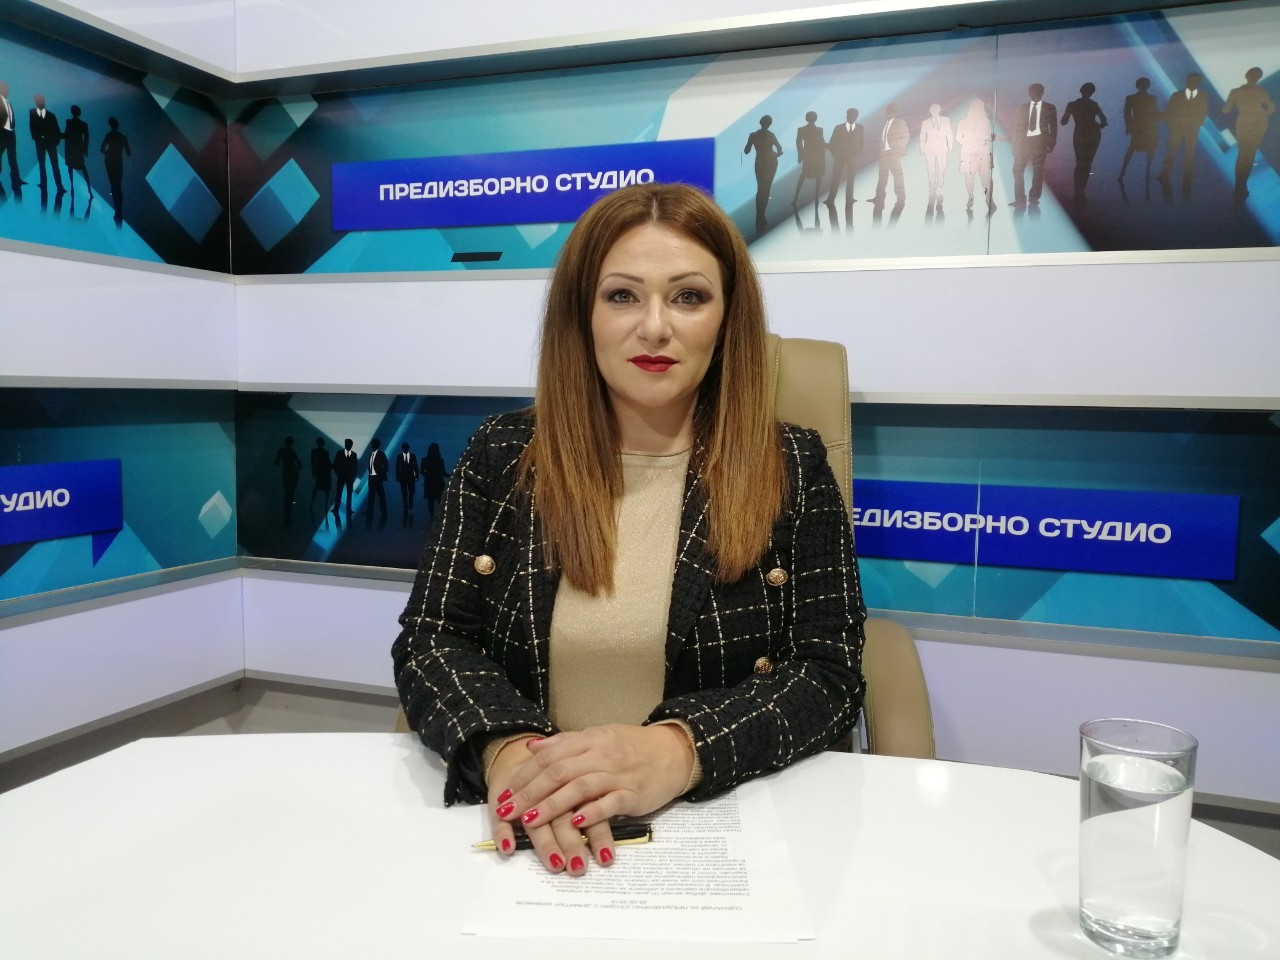 Започват Предизборните студиа по телевизия Щерев ТВ